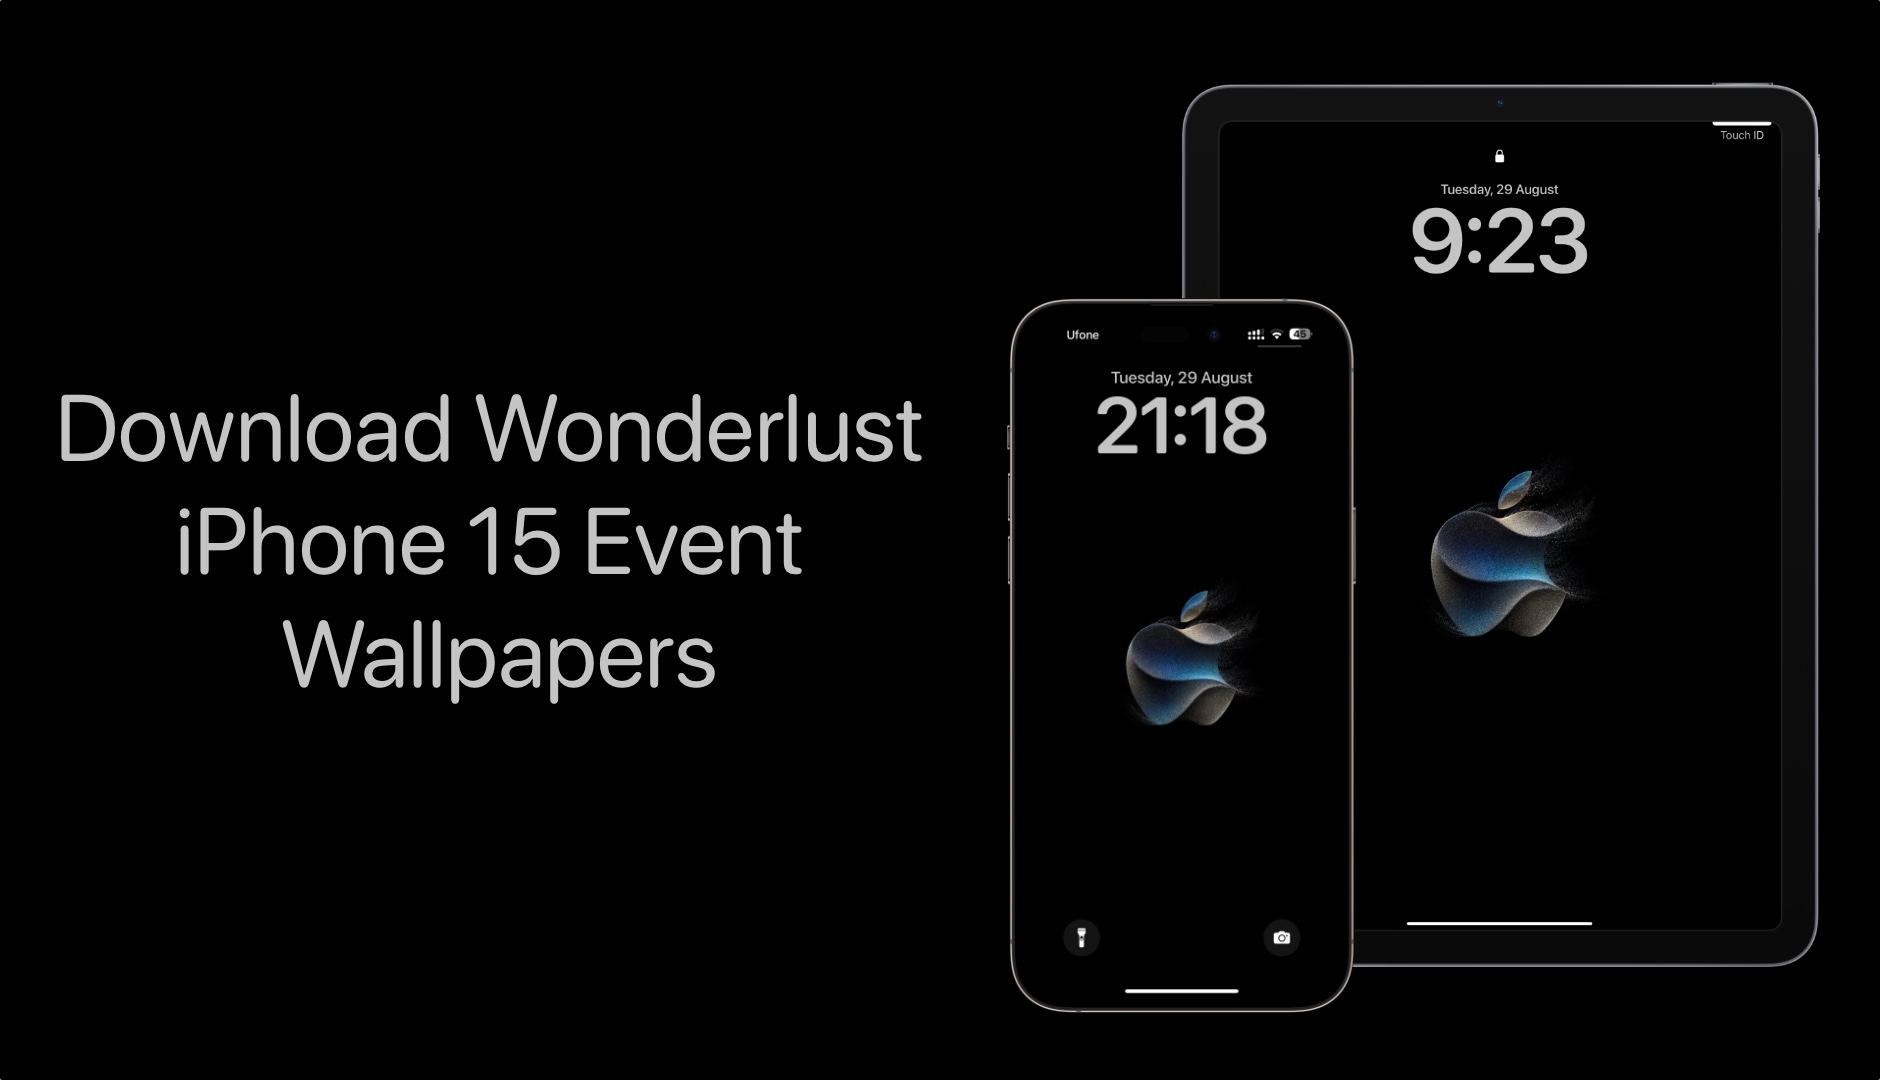 Download Wonderlust iPhone 15 Event Wallpapers Here - iOS Hacker